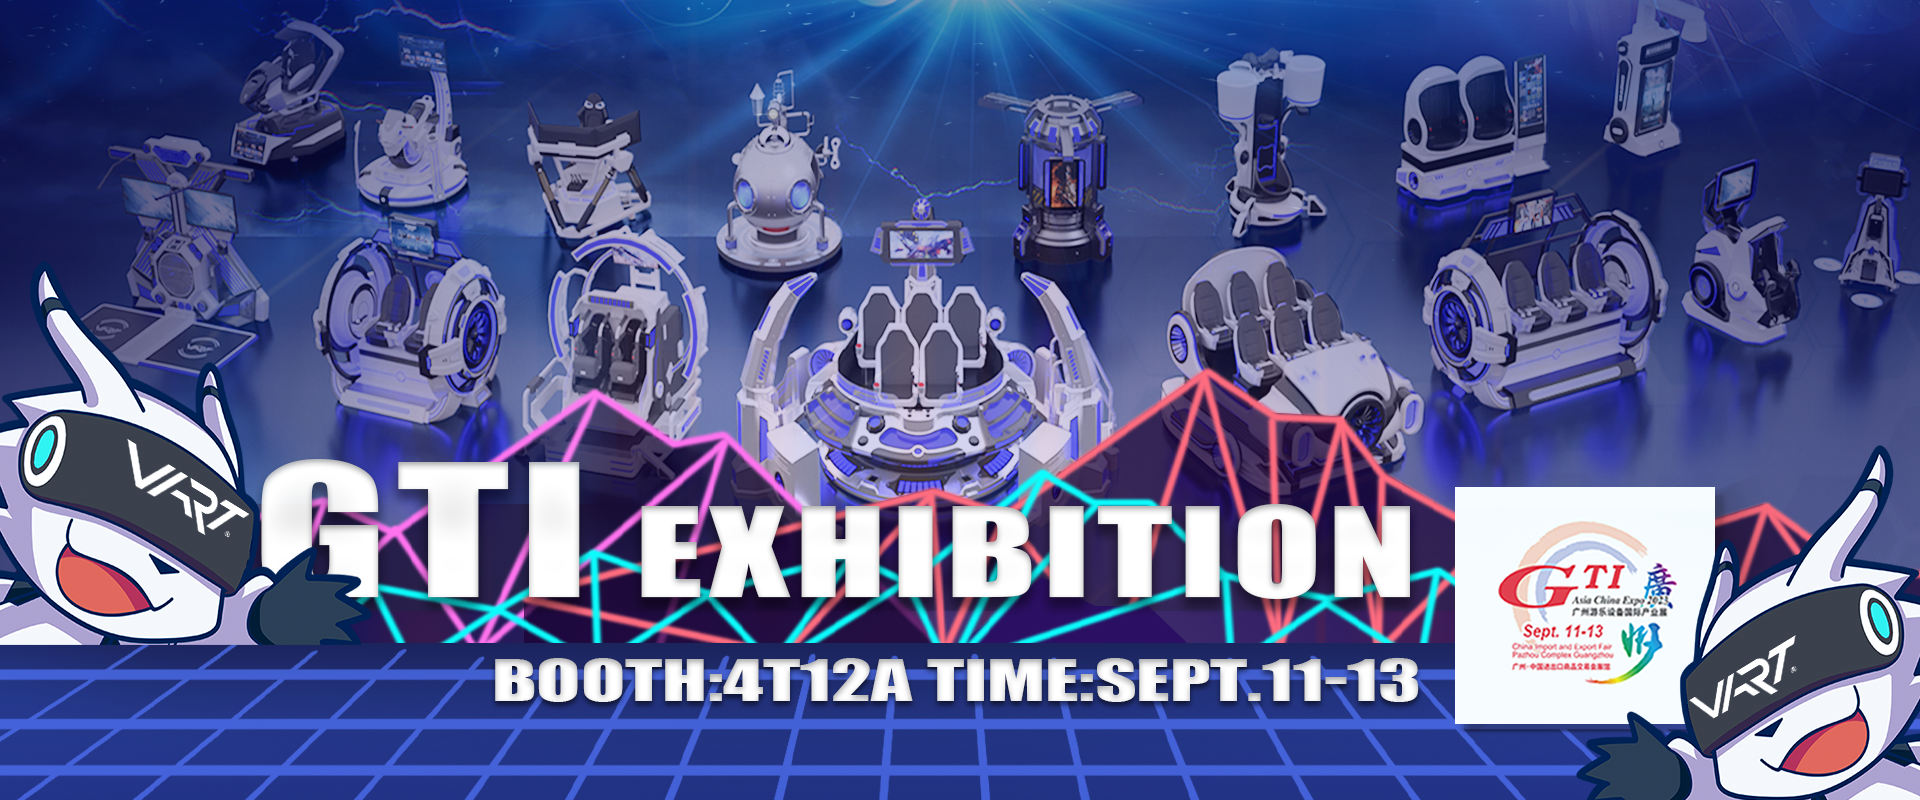 GTI exhibition